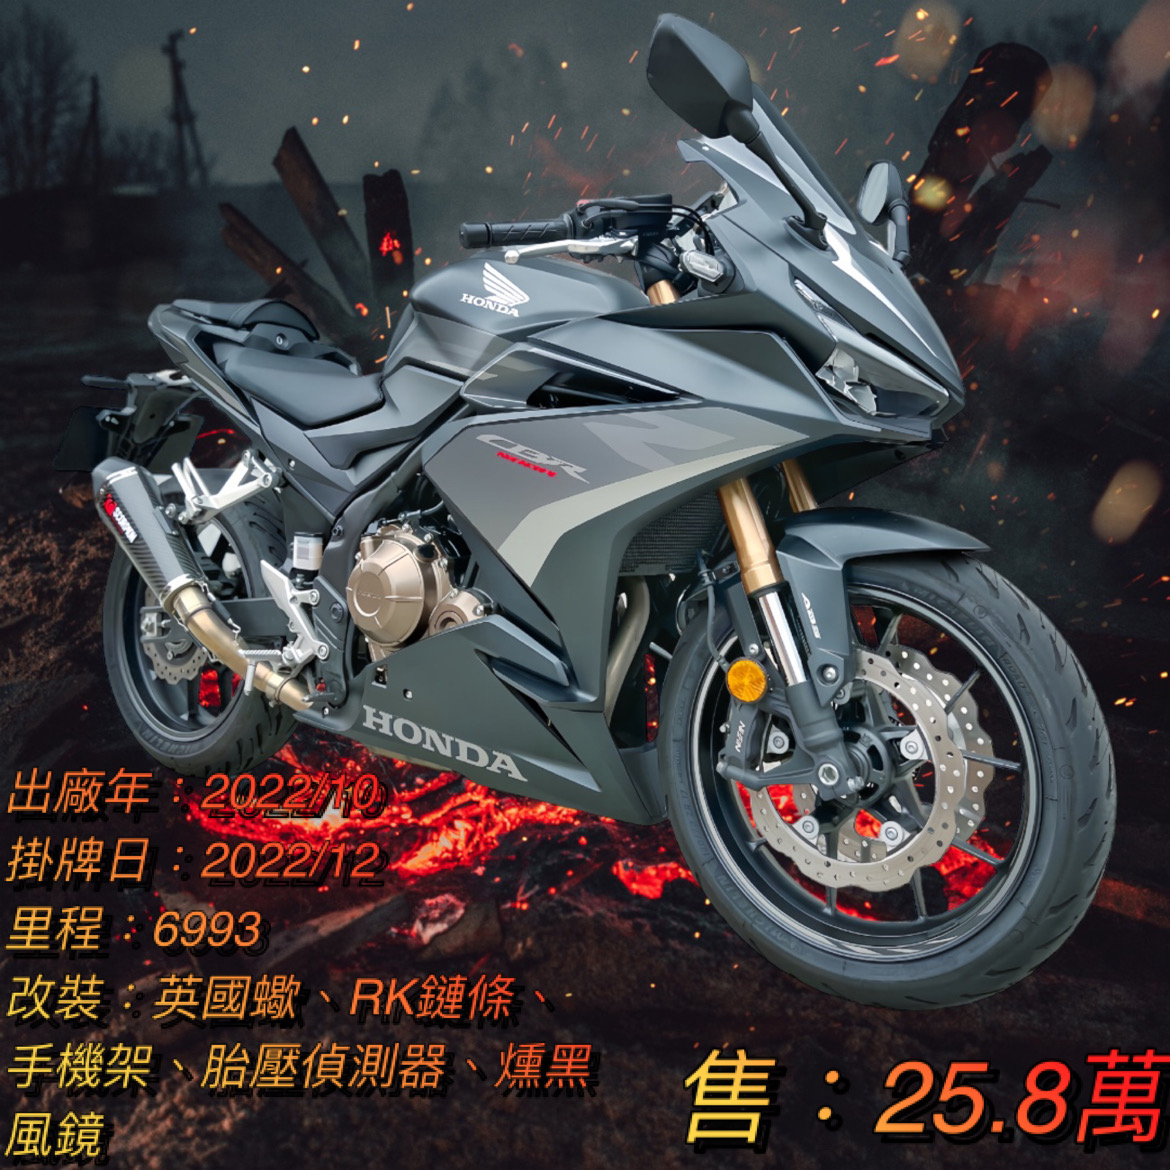 【阿宏大型重機買賣】HONDA CBR500R - 「Webike-摩托車市」 2022年 CBR500R 台本車 原廠保固中 阿宏大型重機買賣